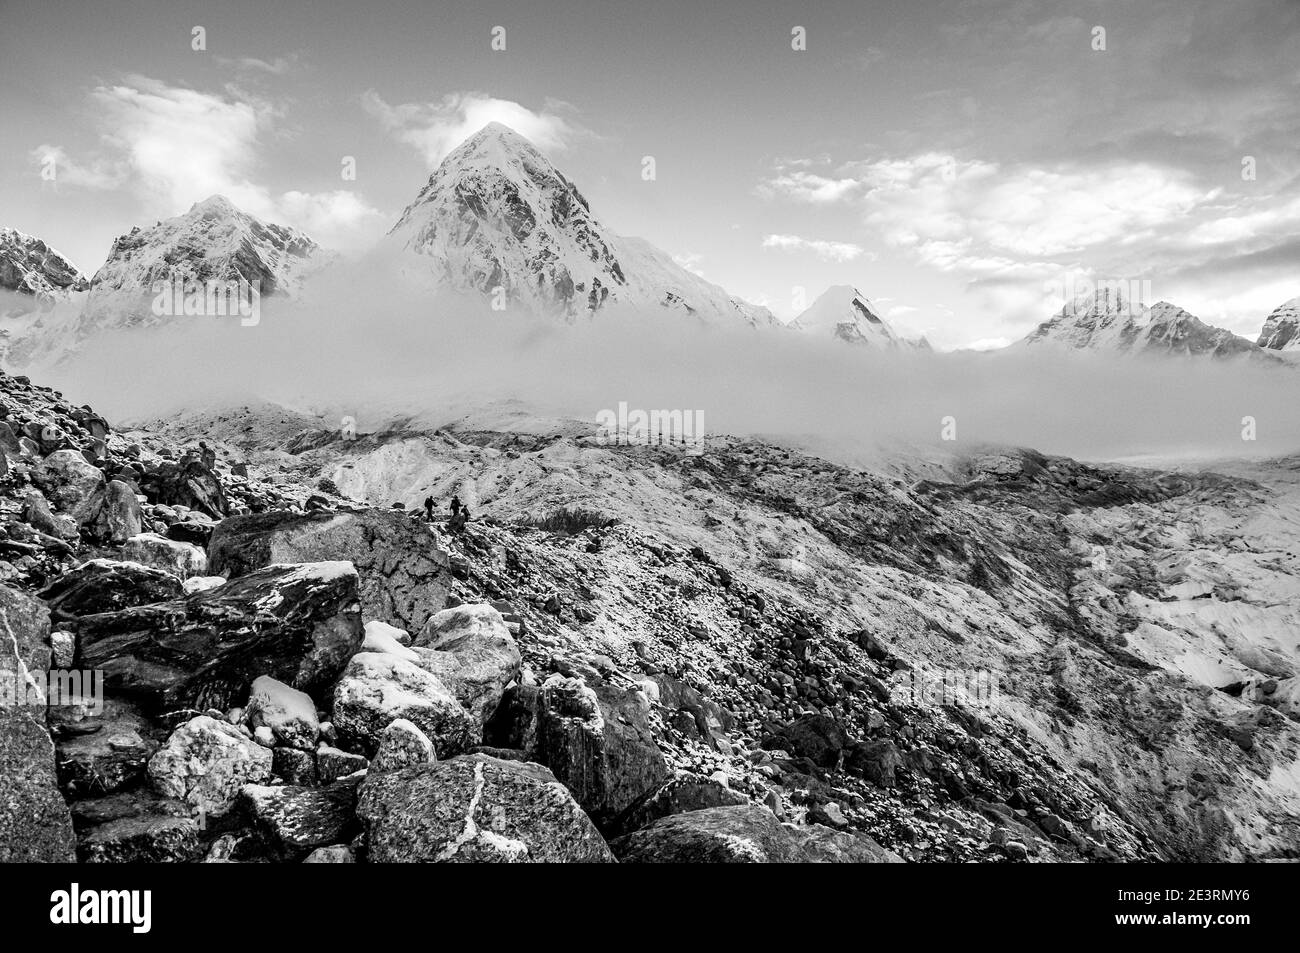 Népal. Montagnes de l'Himalaya en monochrome dans le parc national de Sagarmatha de la vallée de Solu Khumbu du Mont Everest au Népal, avec Pumori vu ici au cours d'une tempête passant de dessus Gorak Shep et Everest alpinisme camp de base. Banque D'Images